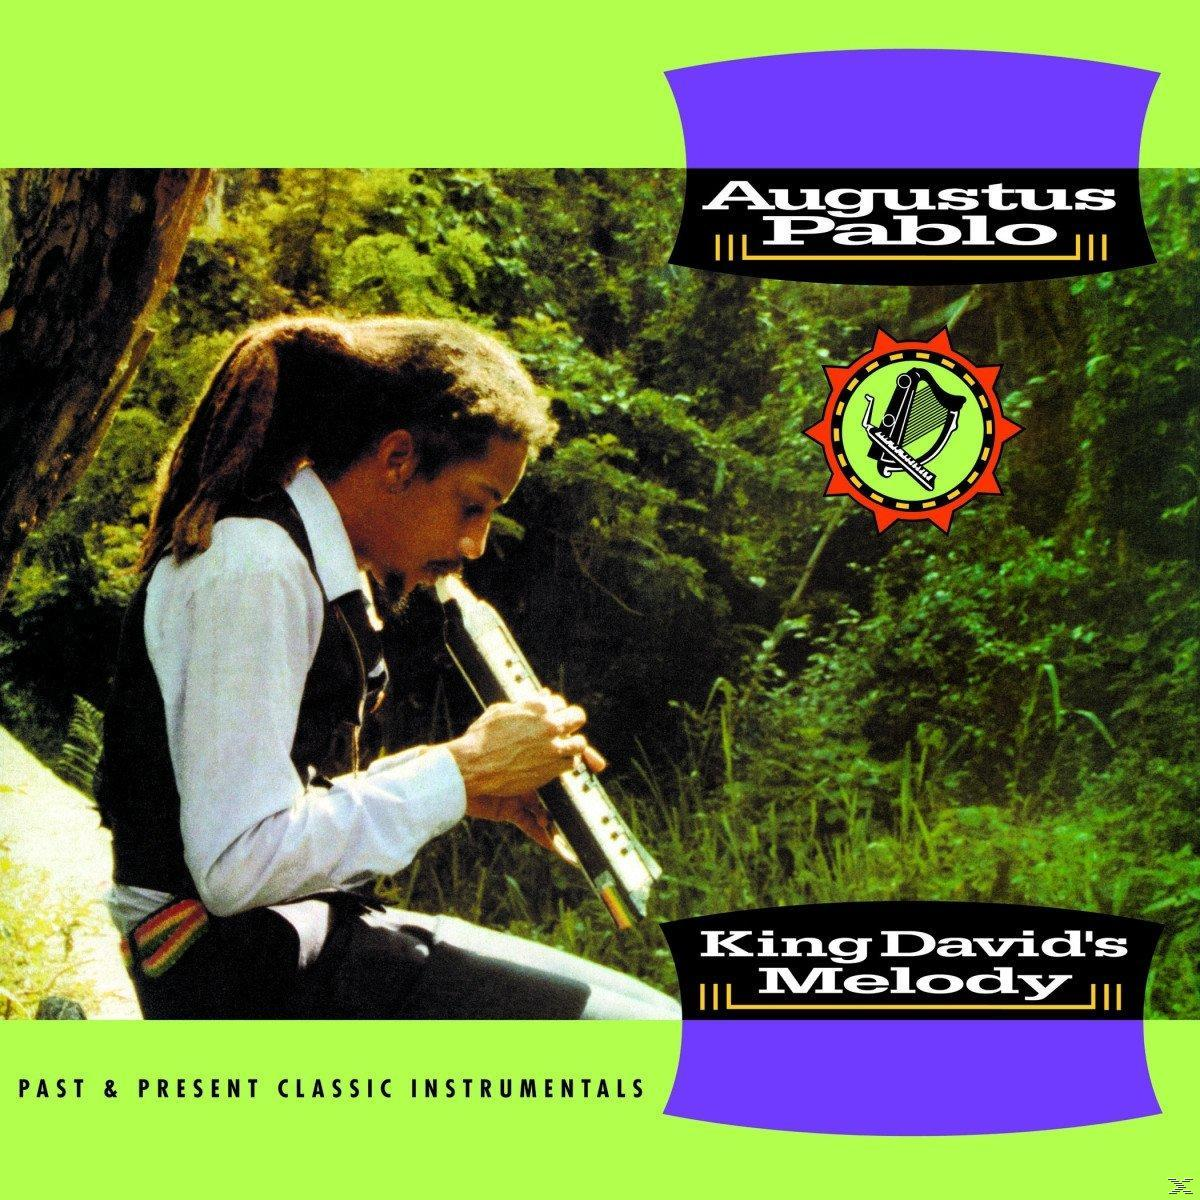 Augustus Pablo (Vinyl) - Melody King David\'s 